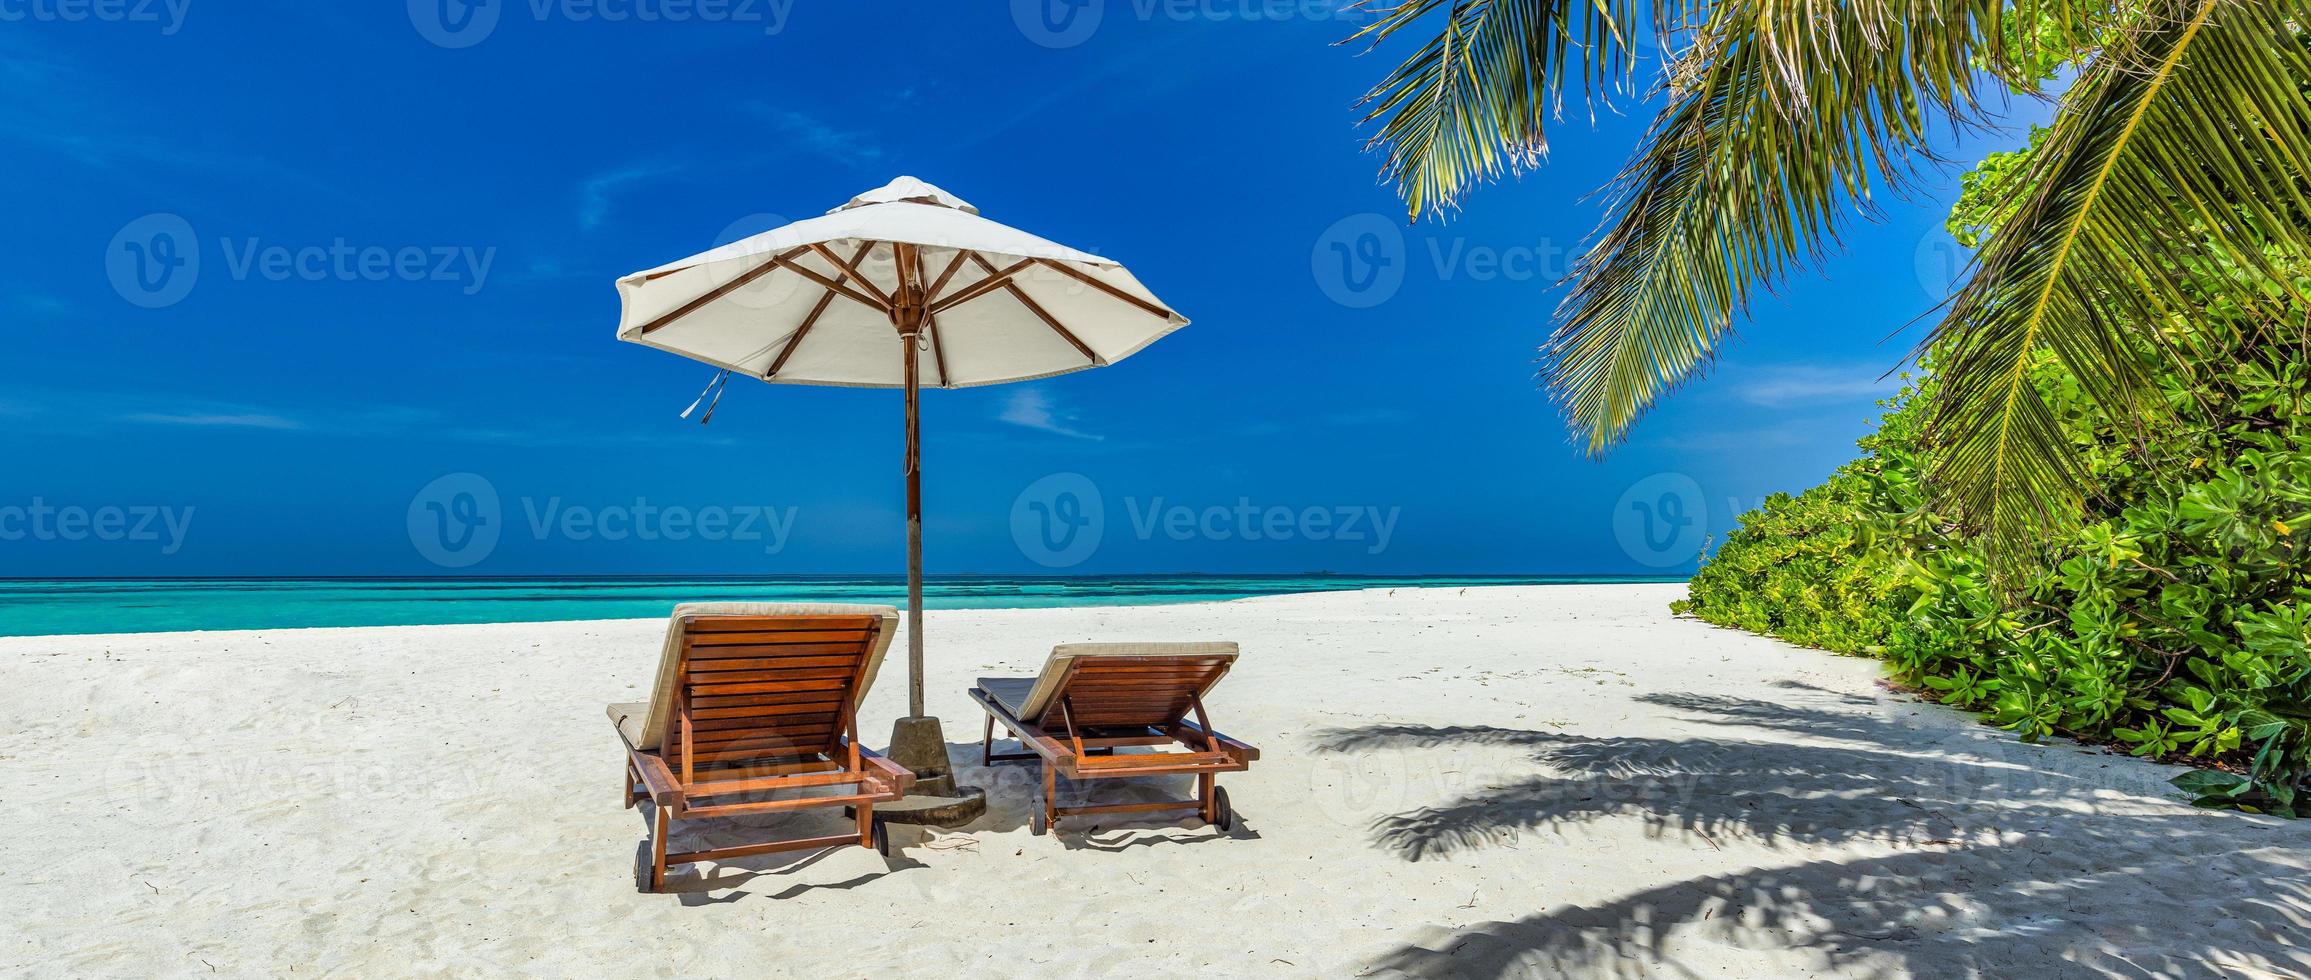 schöne tropische sonnige küste, paar sonnenliegen stühle regenschirm unter palmenblättern. Seesand Himmel. romantisch entspannen lebensstil panoramische insel strand hintergrund. sommerreise exotisches urlaubspanorama foto